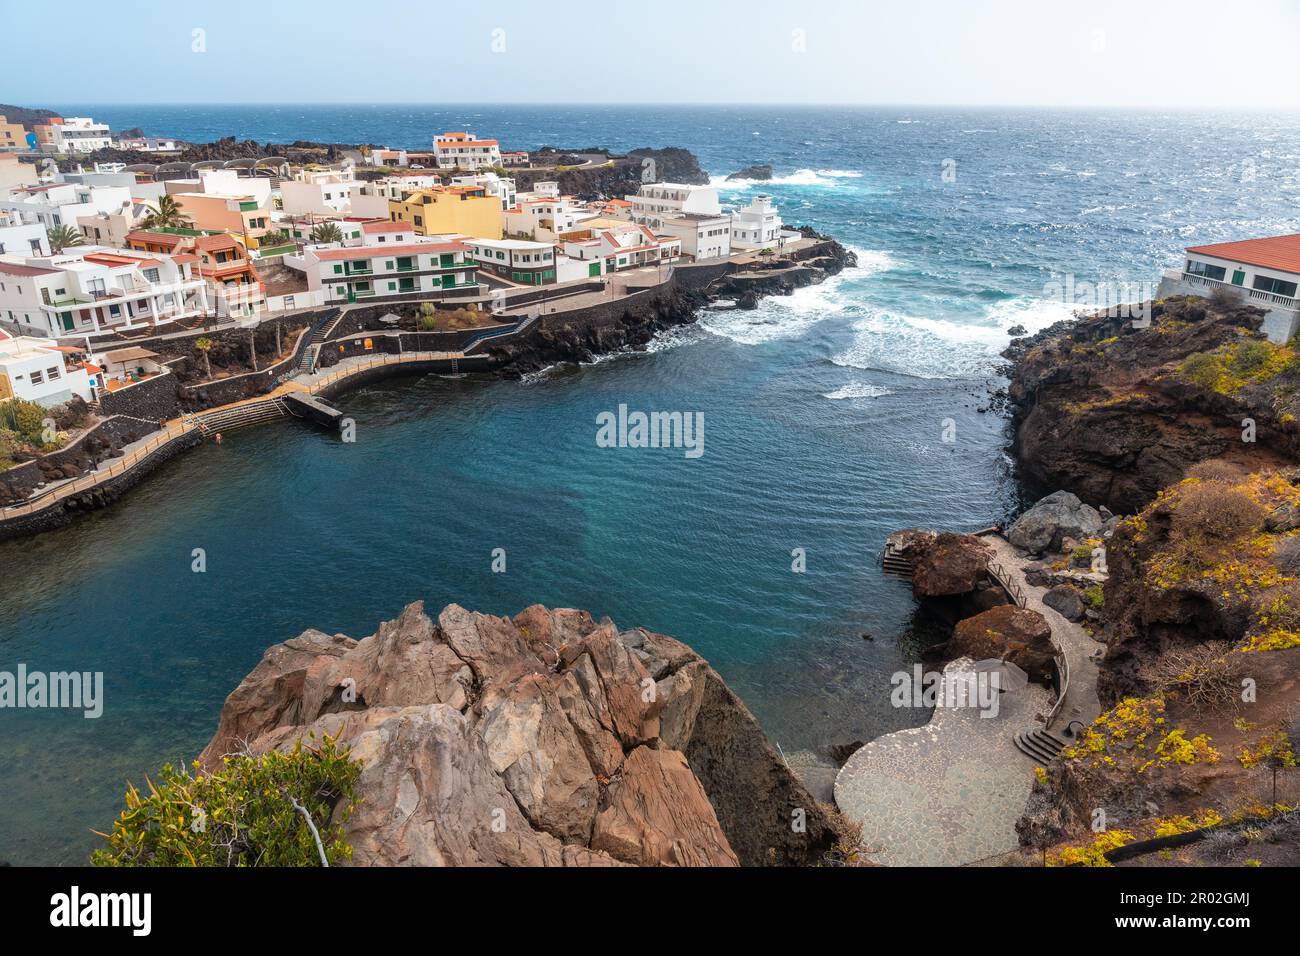 La ville de Tamaduste située sur la côte de l'île d'El Hierro, îles Canaries, Espagne Banque D'Images